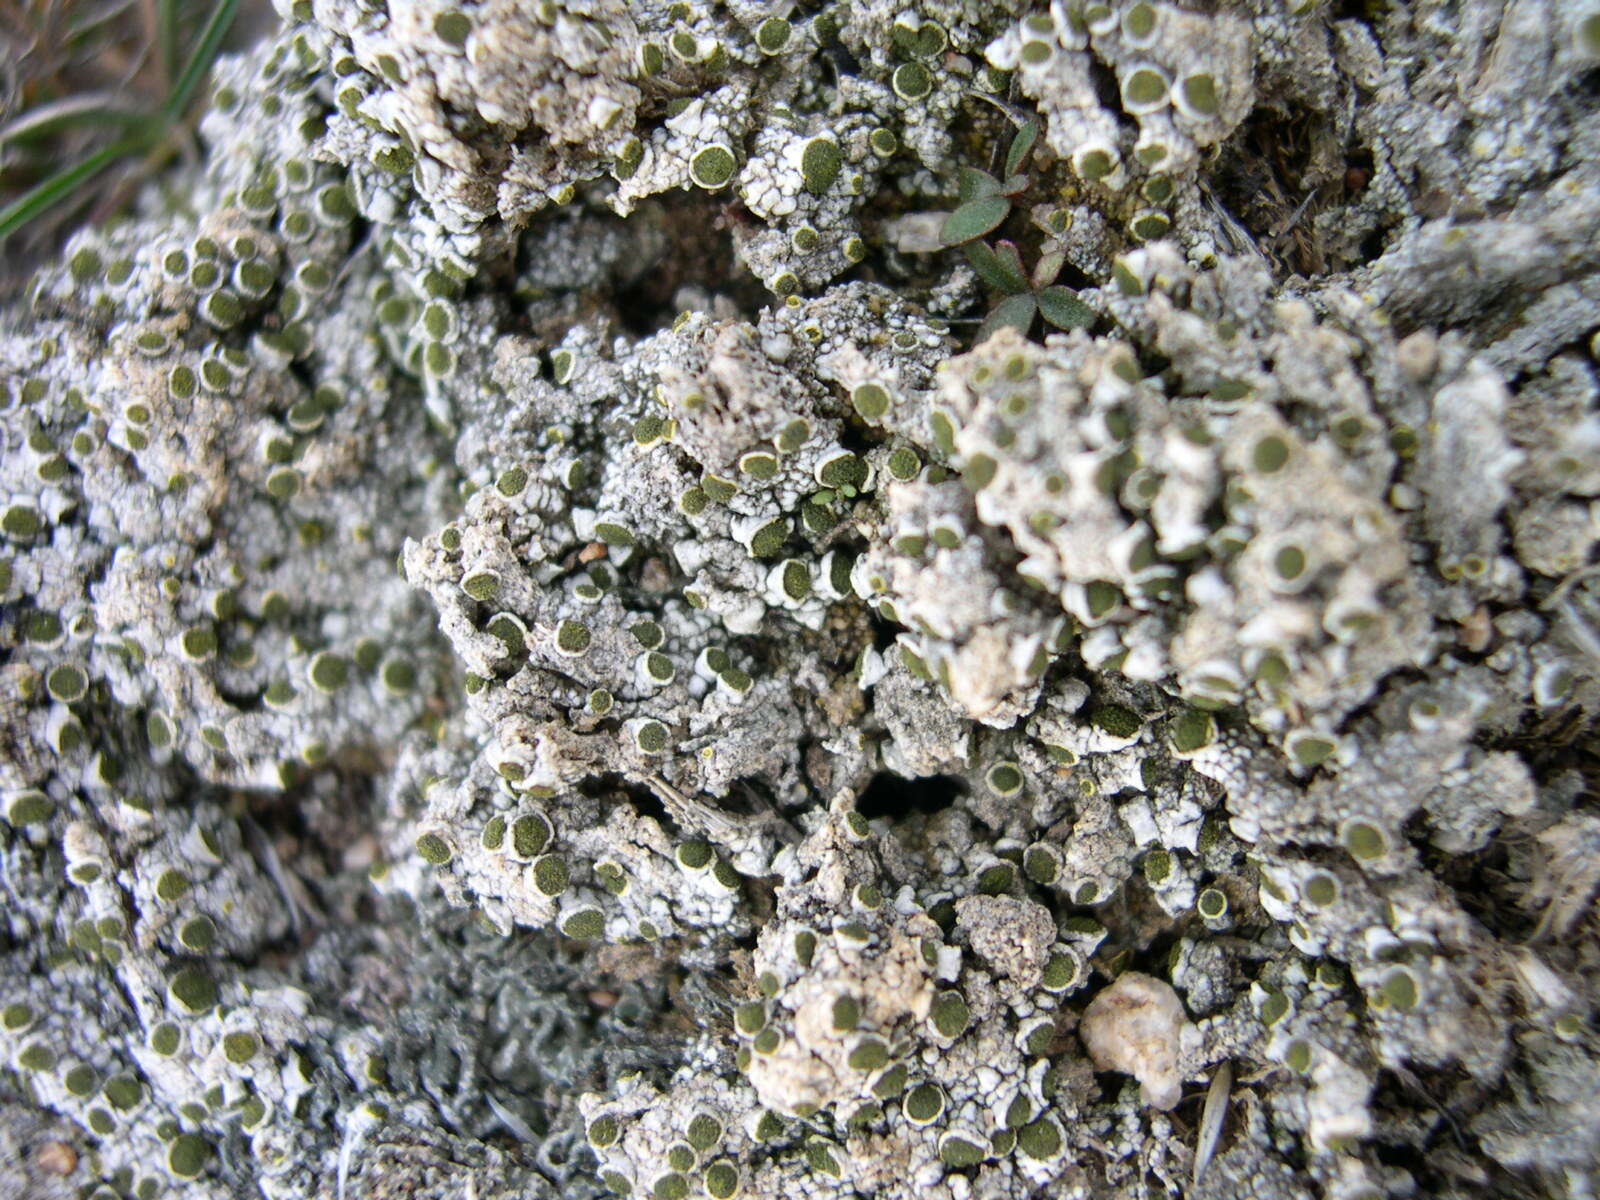 Image of texosporium lichen